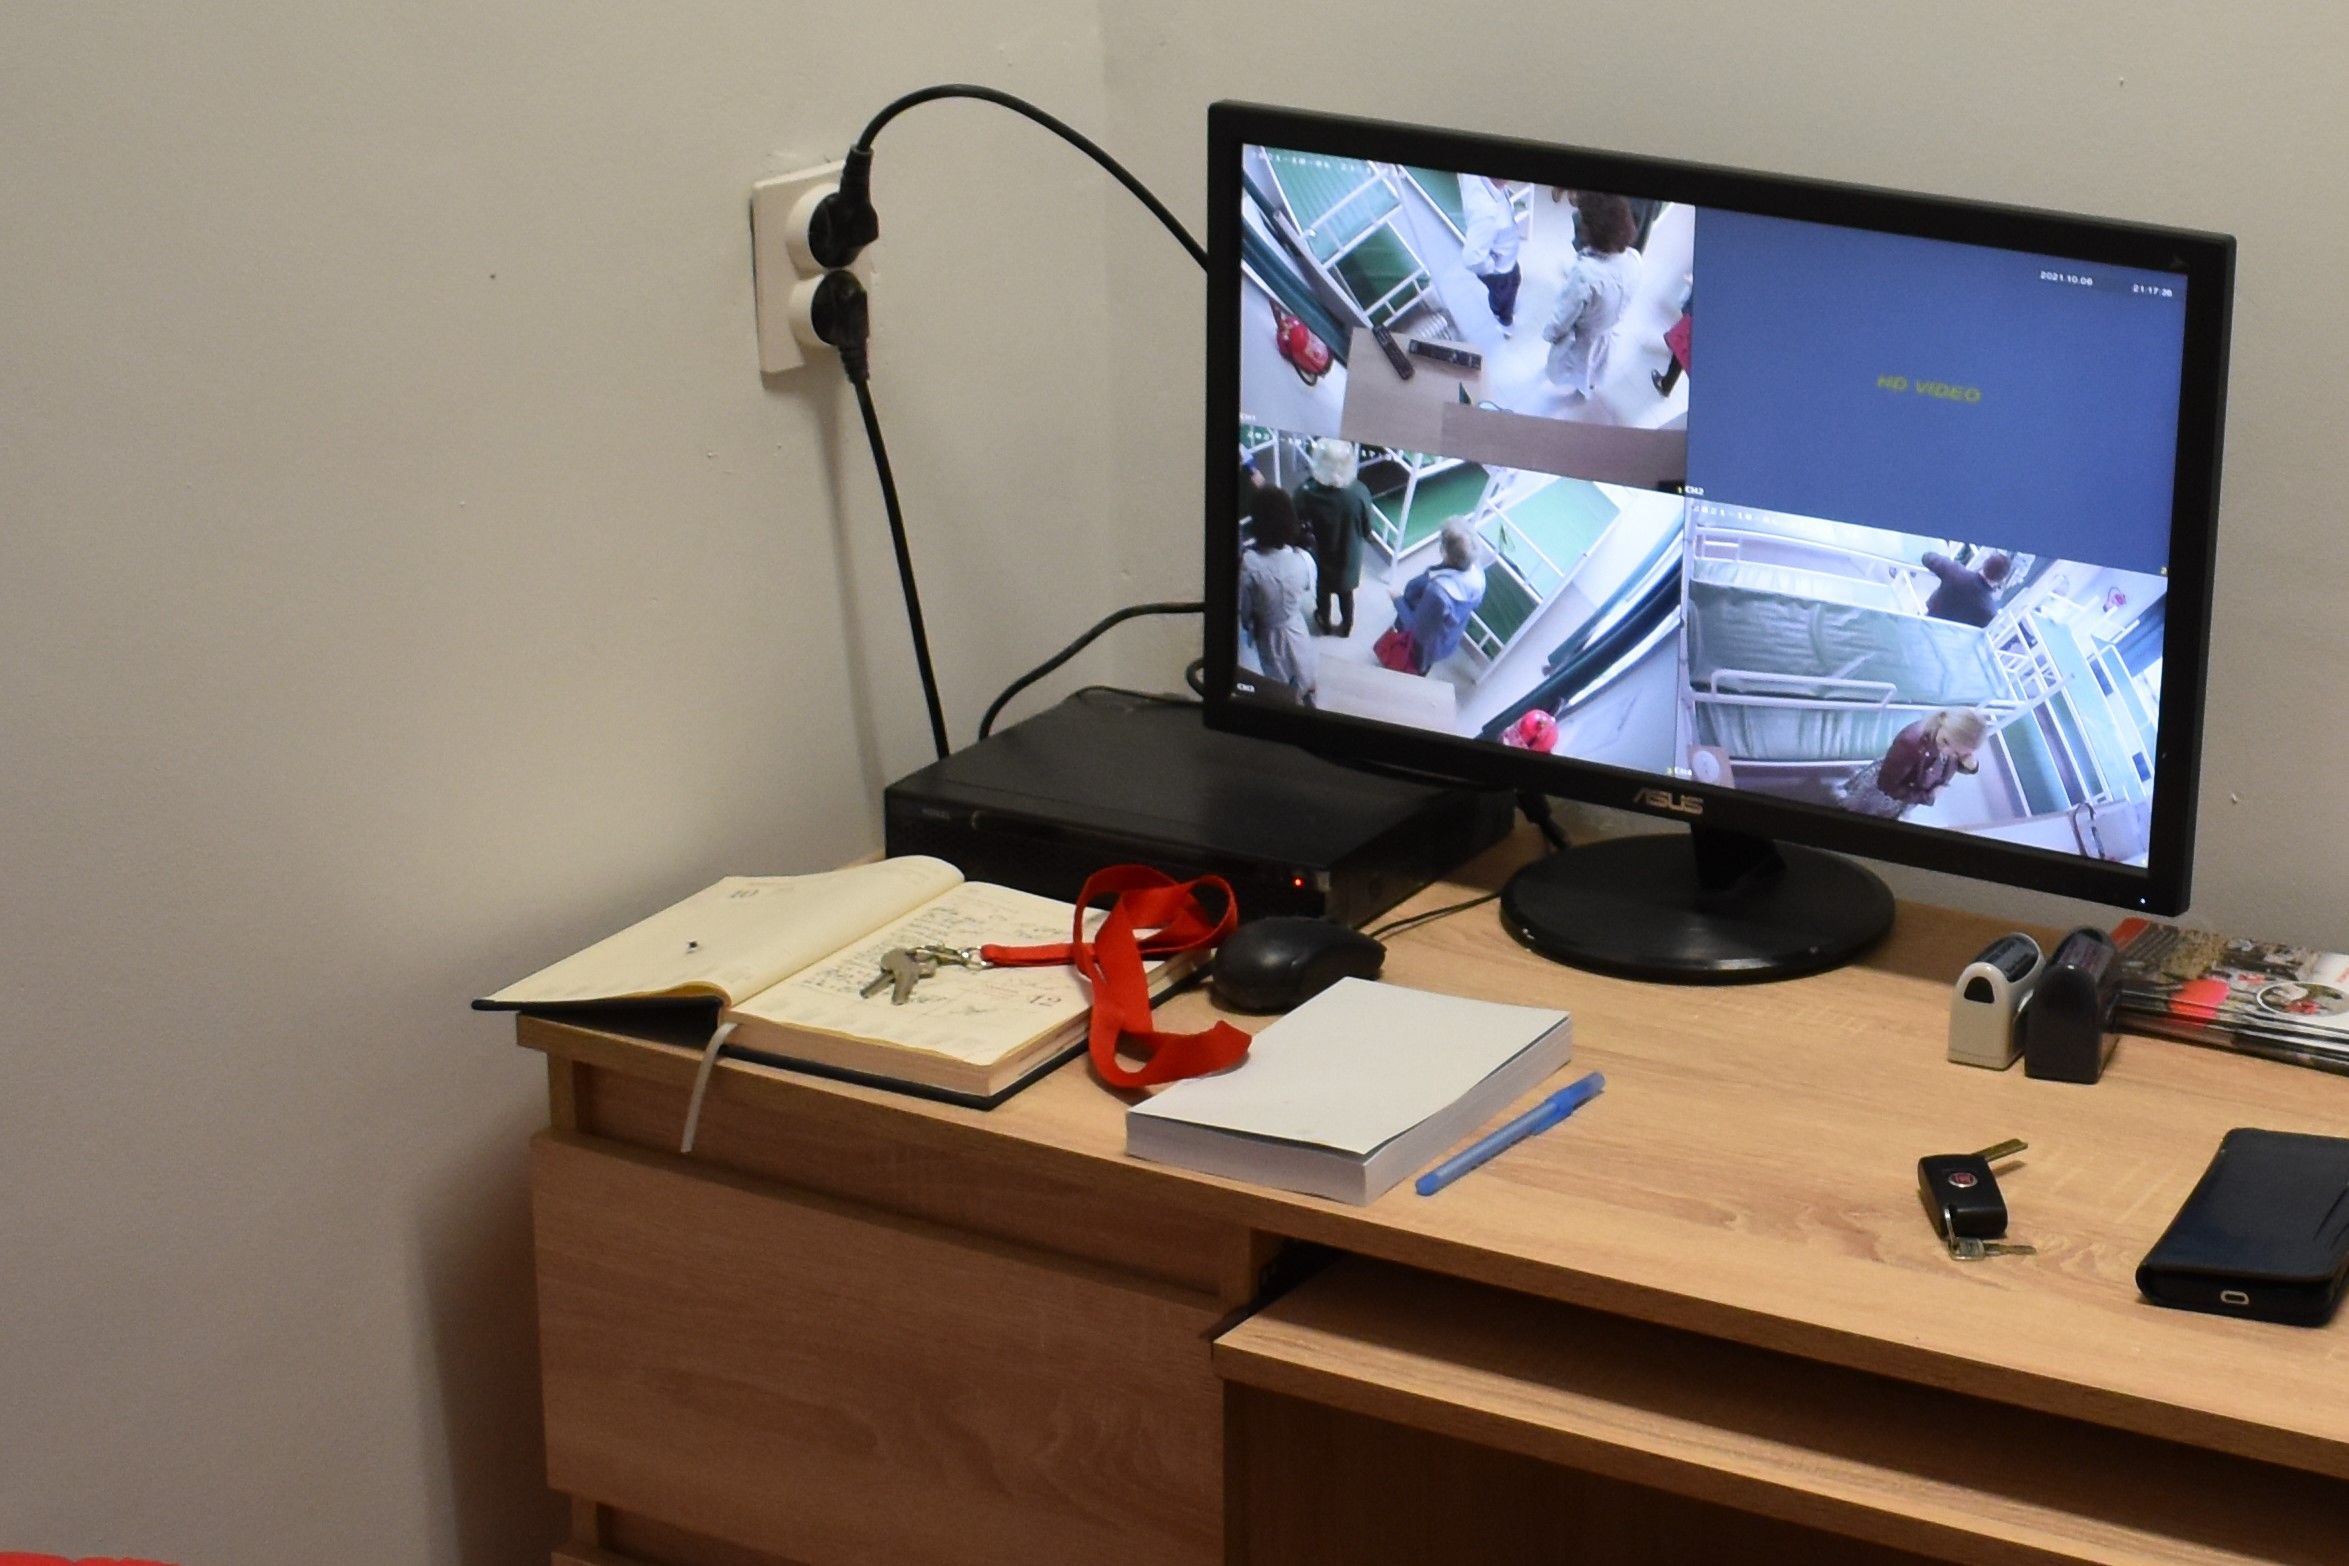 Na biurku stoi włączony monitor komputera. Na ekranie widać widok pokazywany przez zainstalowane w pomieszczeniu kamery monitoringu.